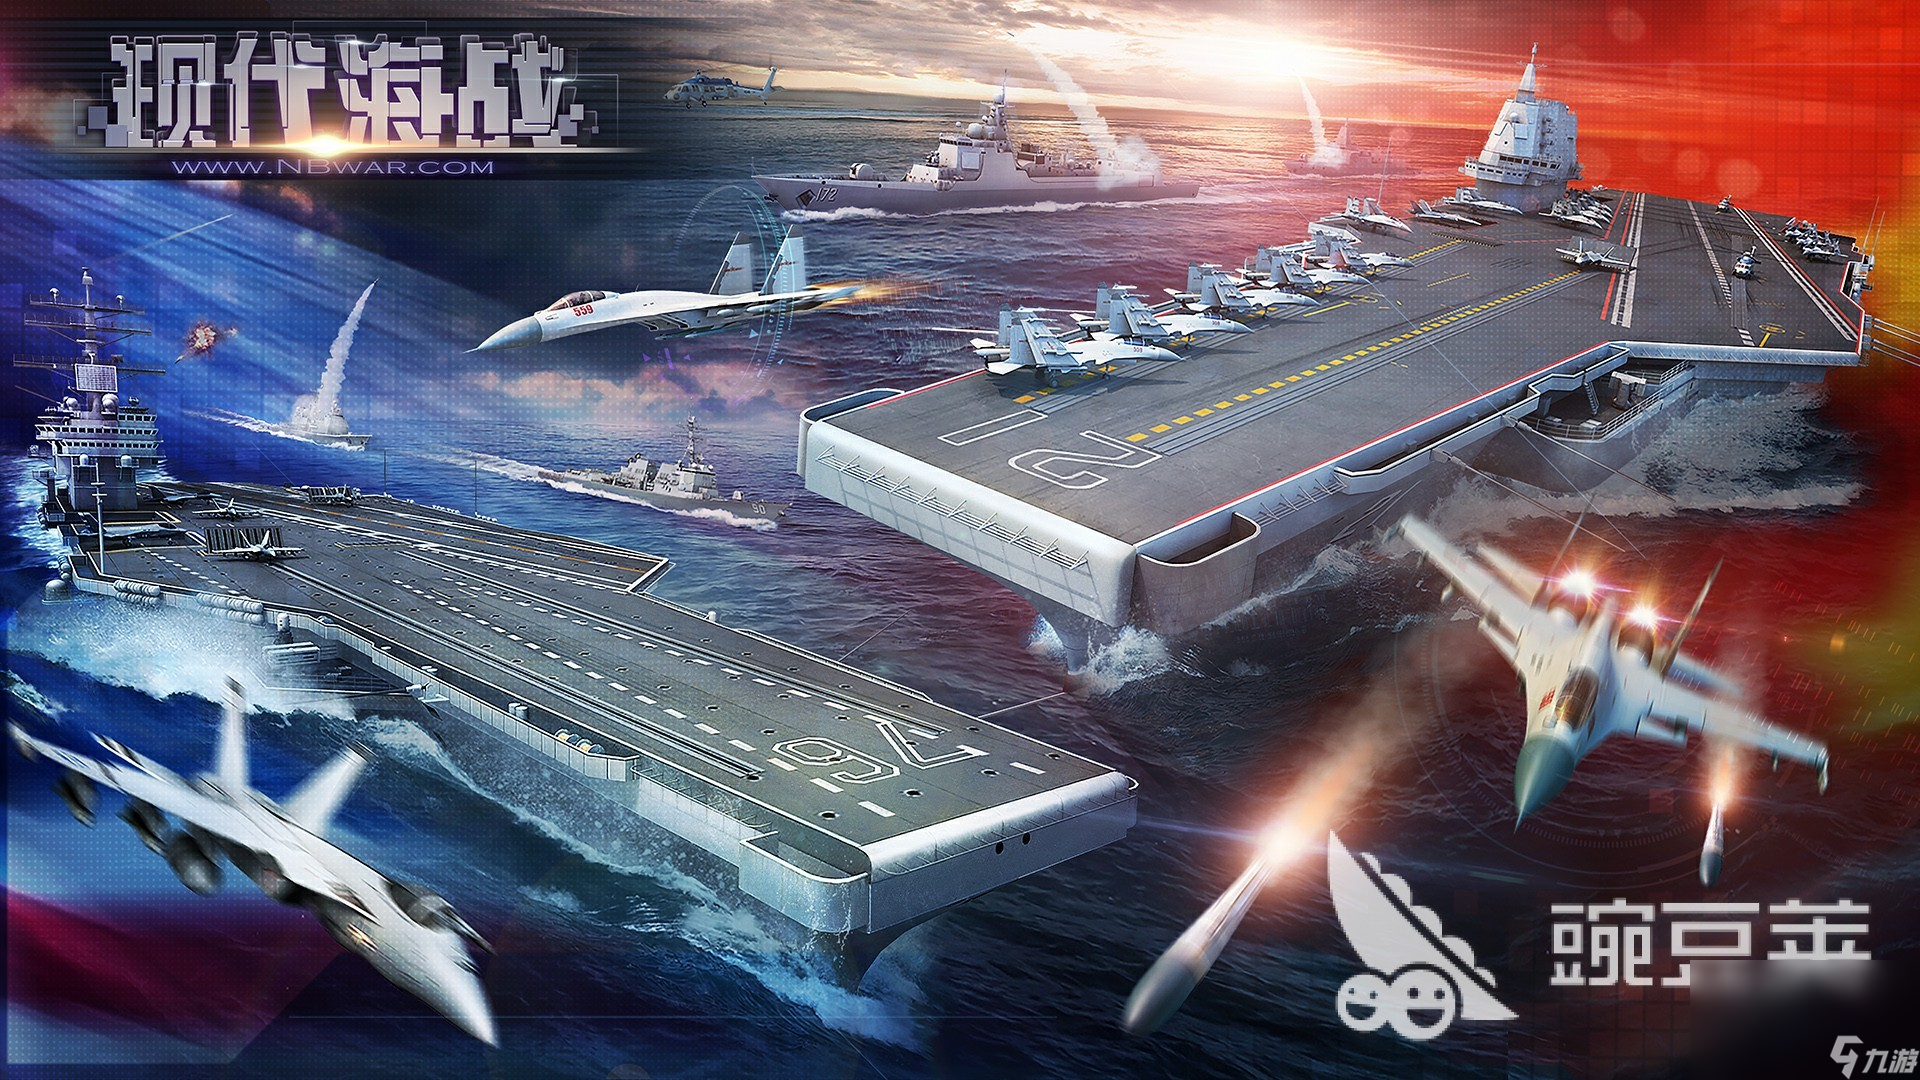 海上战争游戏推荐下载大全 2022海上战争手游有哪些分享